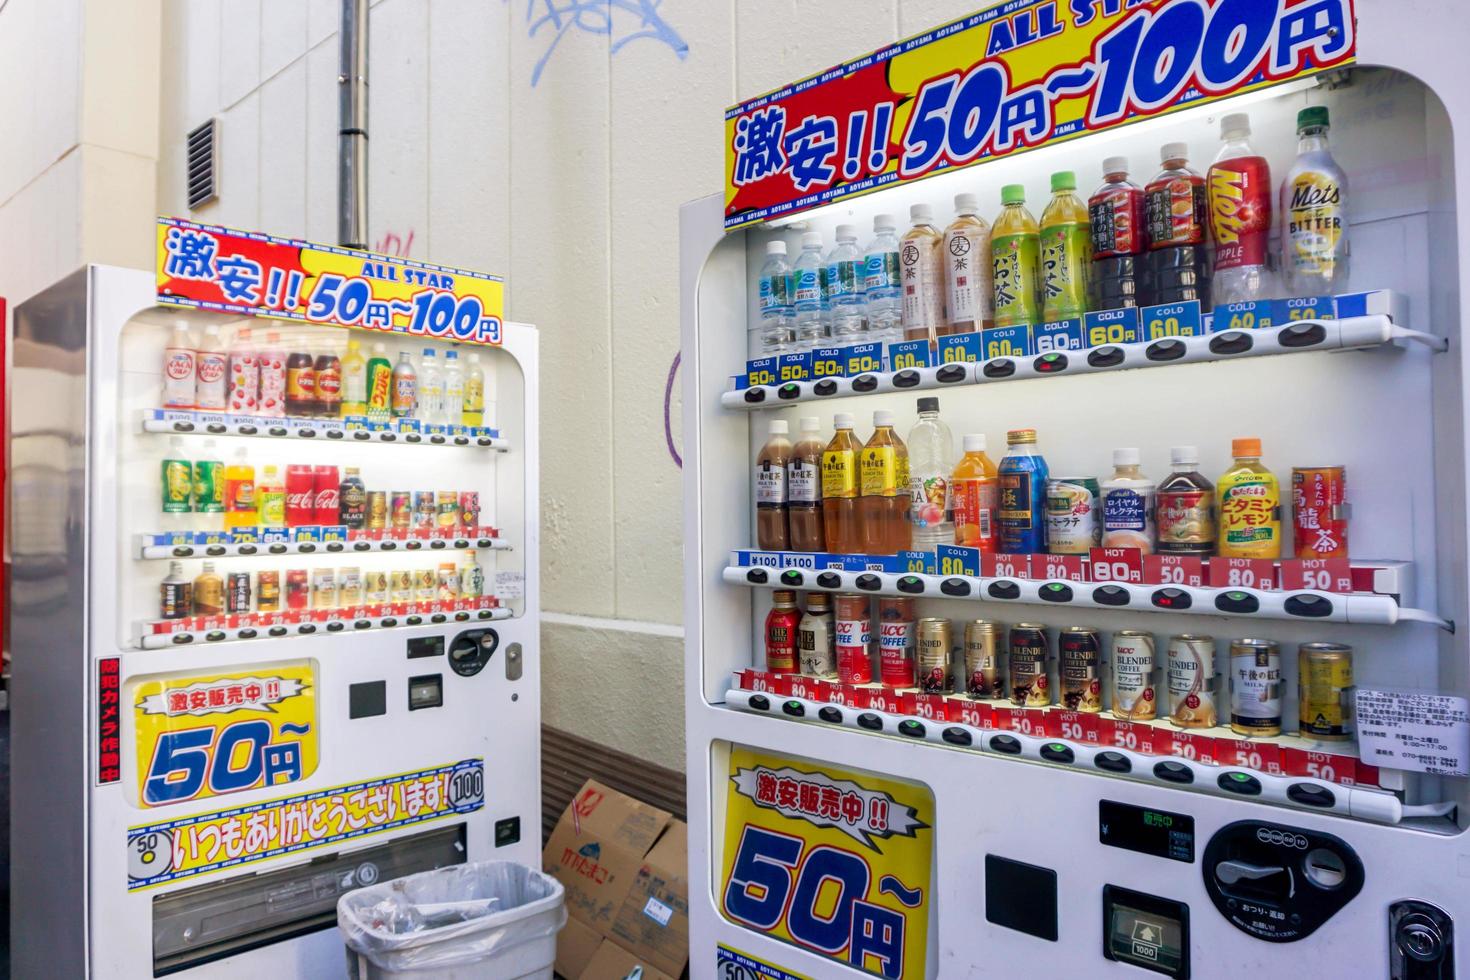 osaka, japão, 2019 - a concorrência no negócio de venda de bebidas em máquinas de venda automática começou a aumentar no japão. por isso, muitas vezes vemos bebidas com desconto em um beco típico da cidade foto